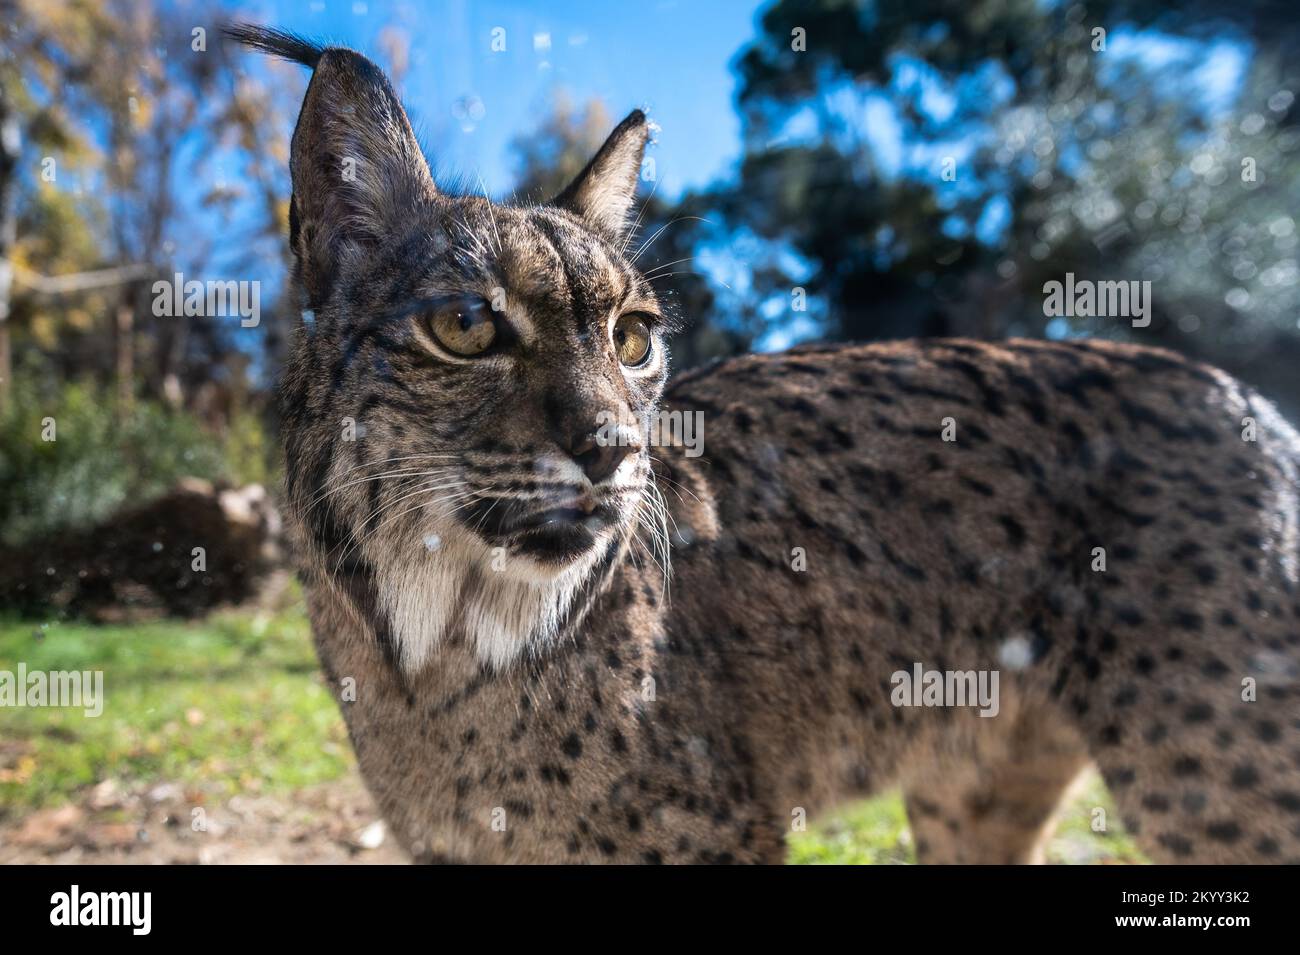 Un lynx ibérique (Lynx pardinus), espèce sauvage de chat endémique de la péninsule ibérique, est classé en voie de disparition Banque D'Images